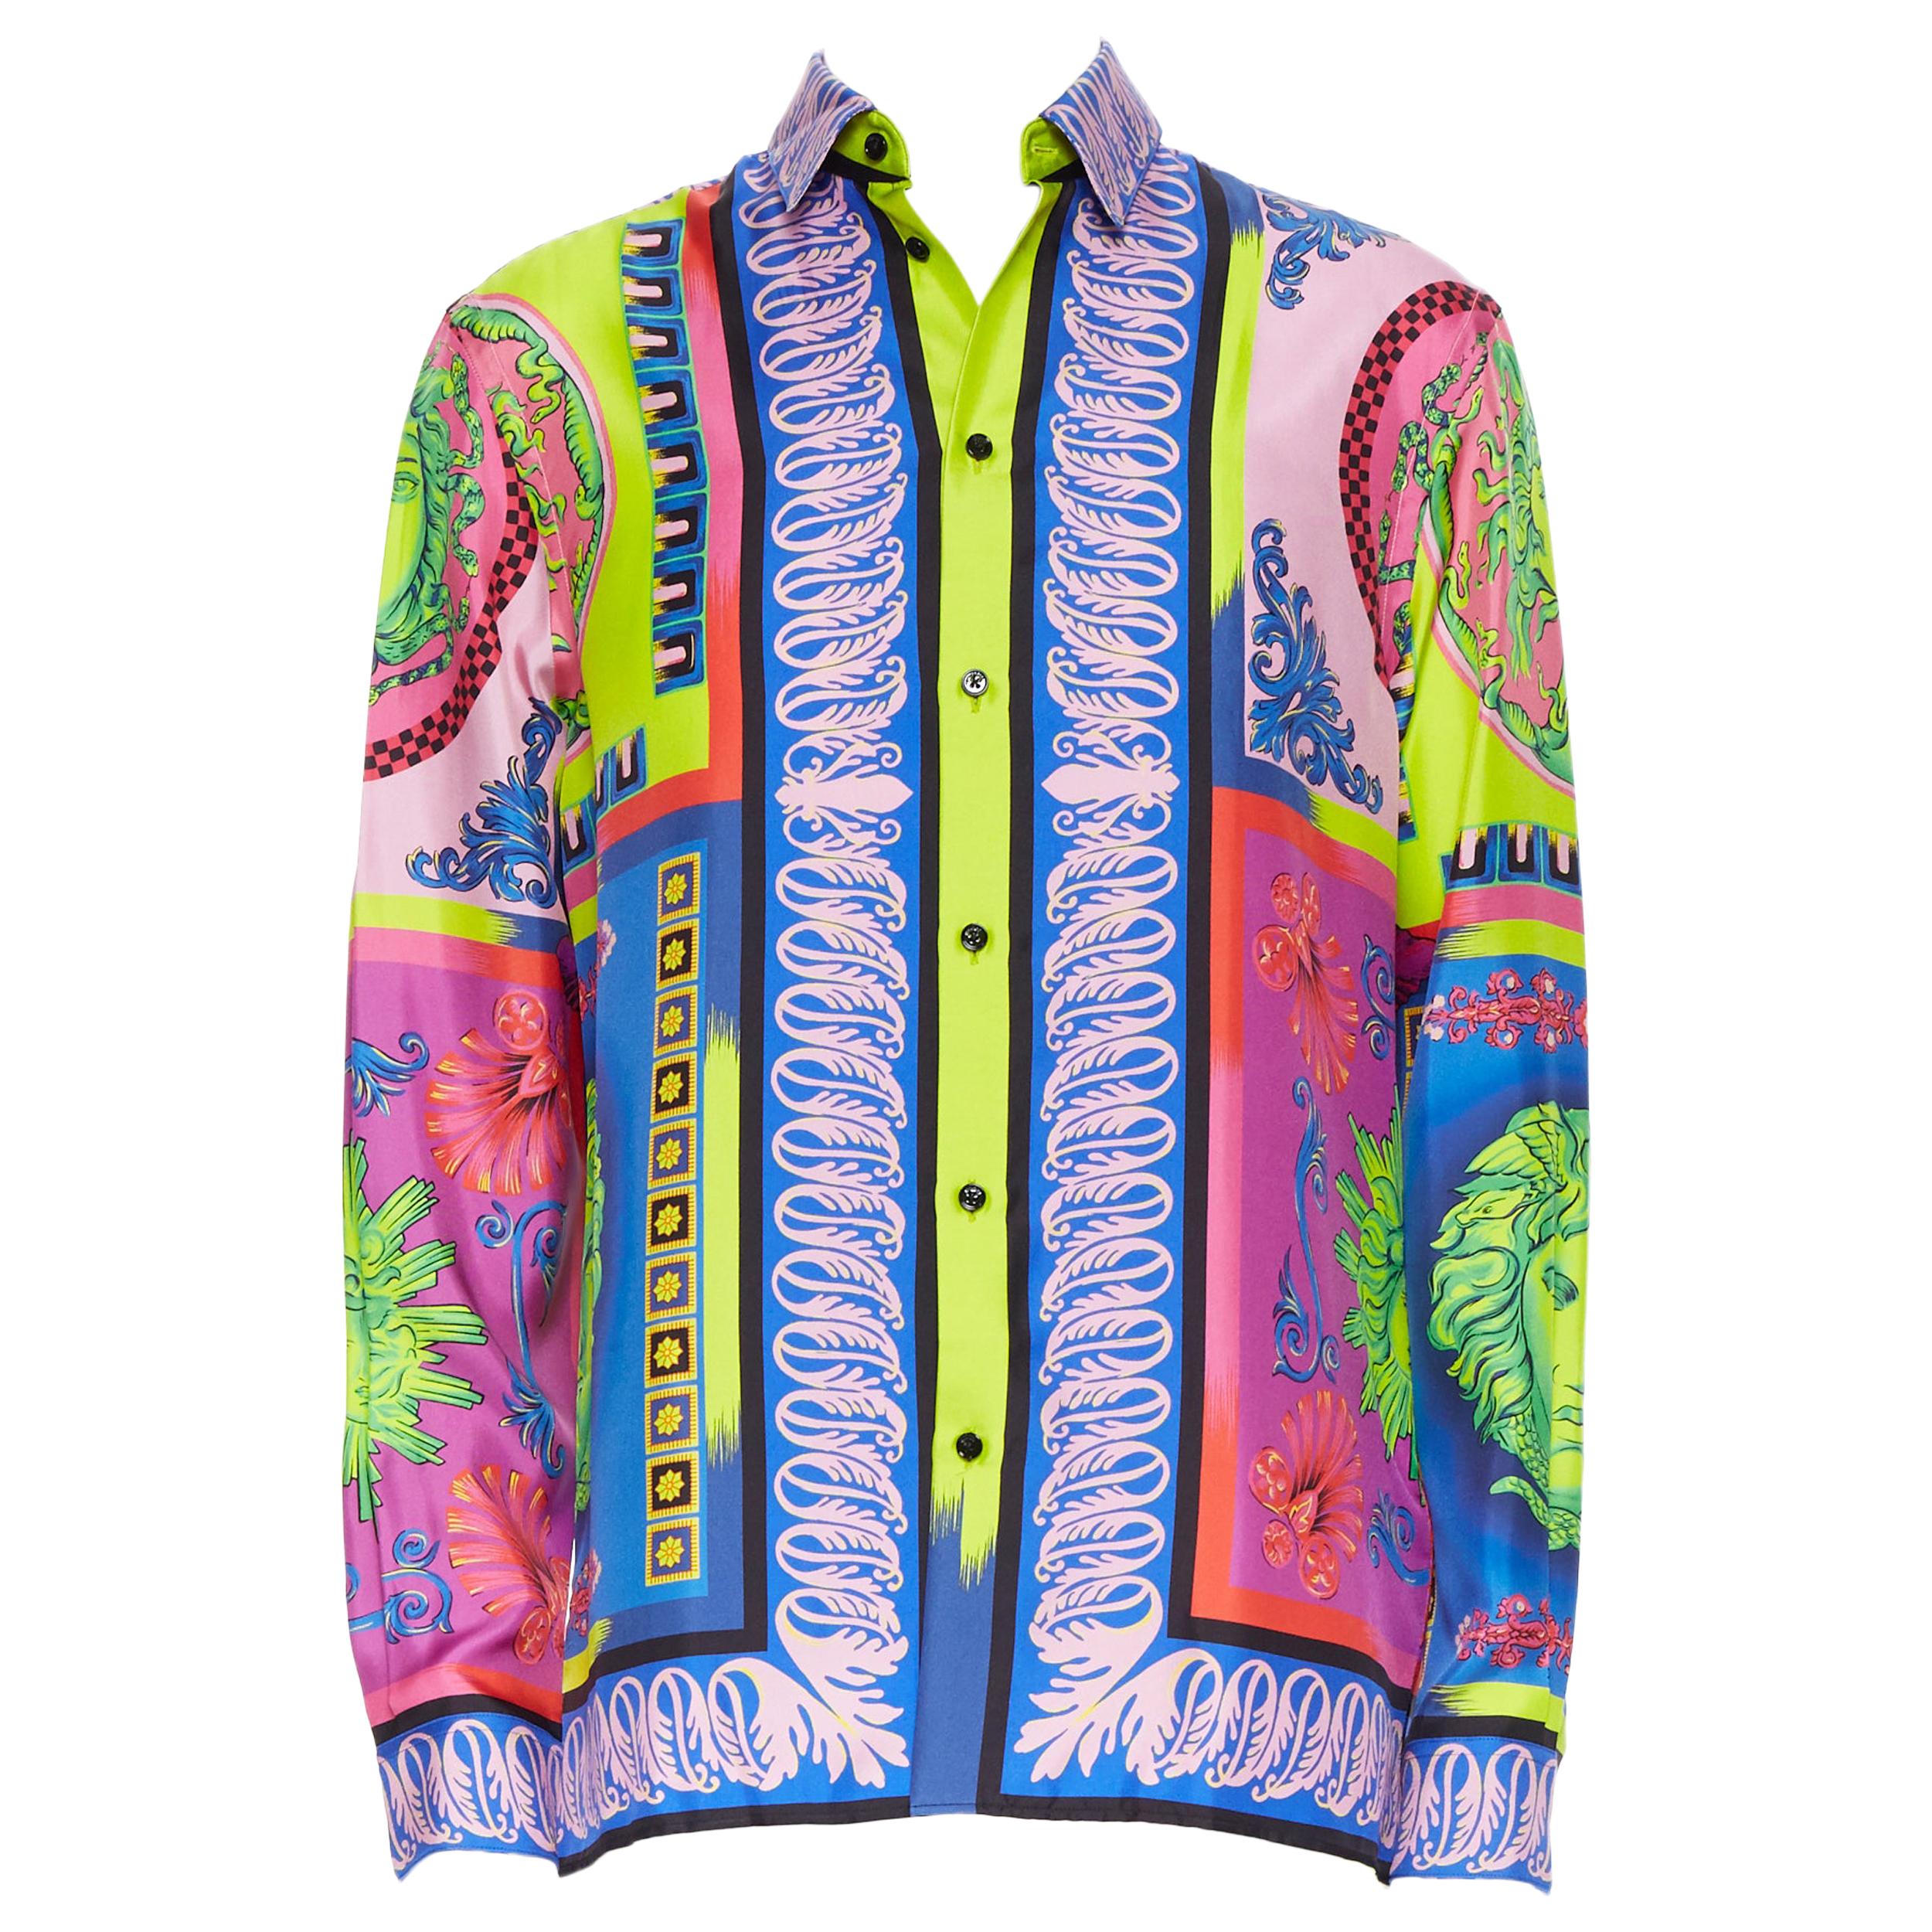 new VERSACE 2018 Runway Pop Foulard 100% silk neon Medusa baroque shirt EU42 XXL